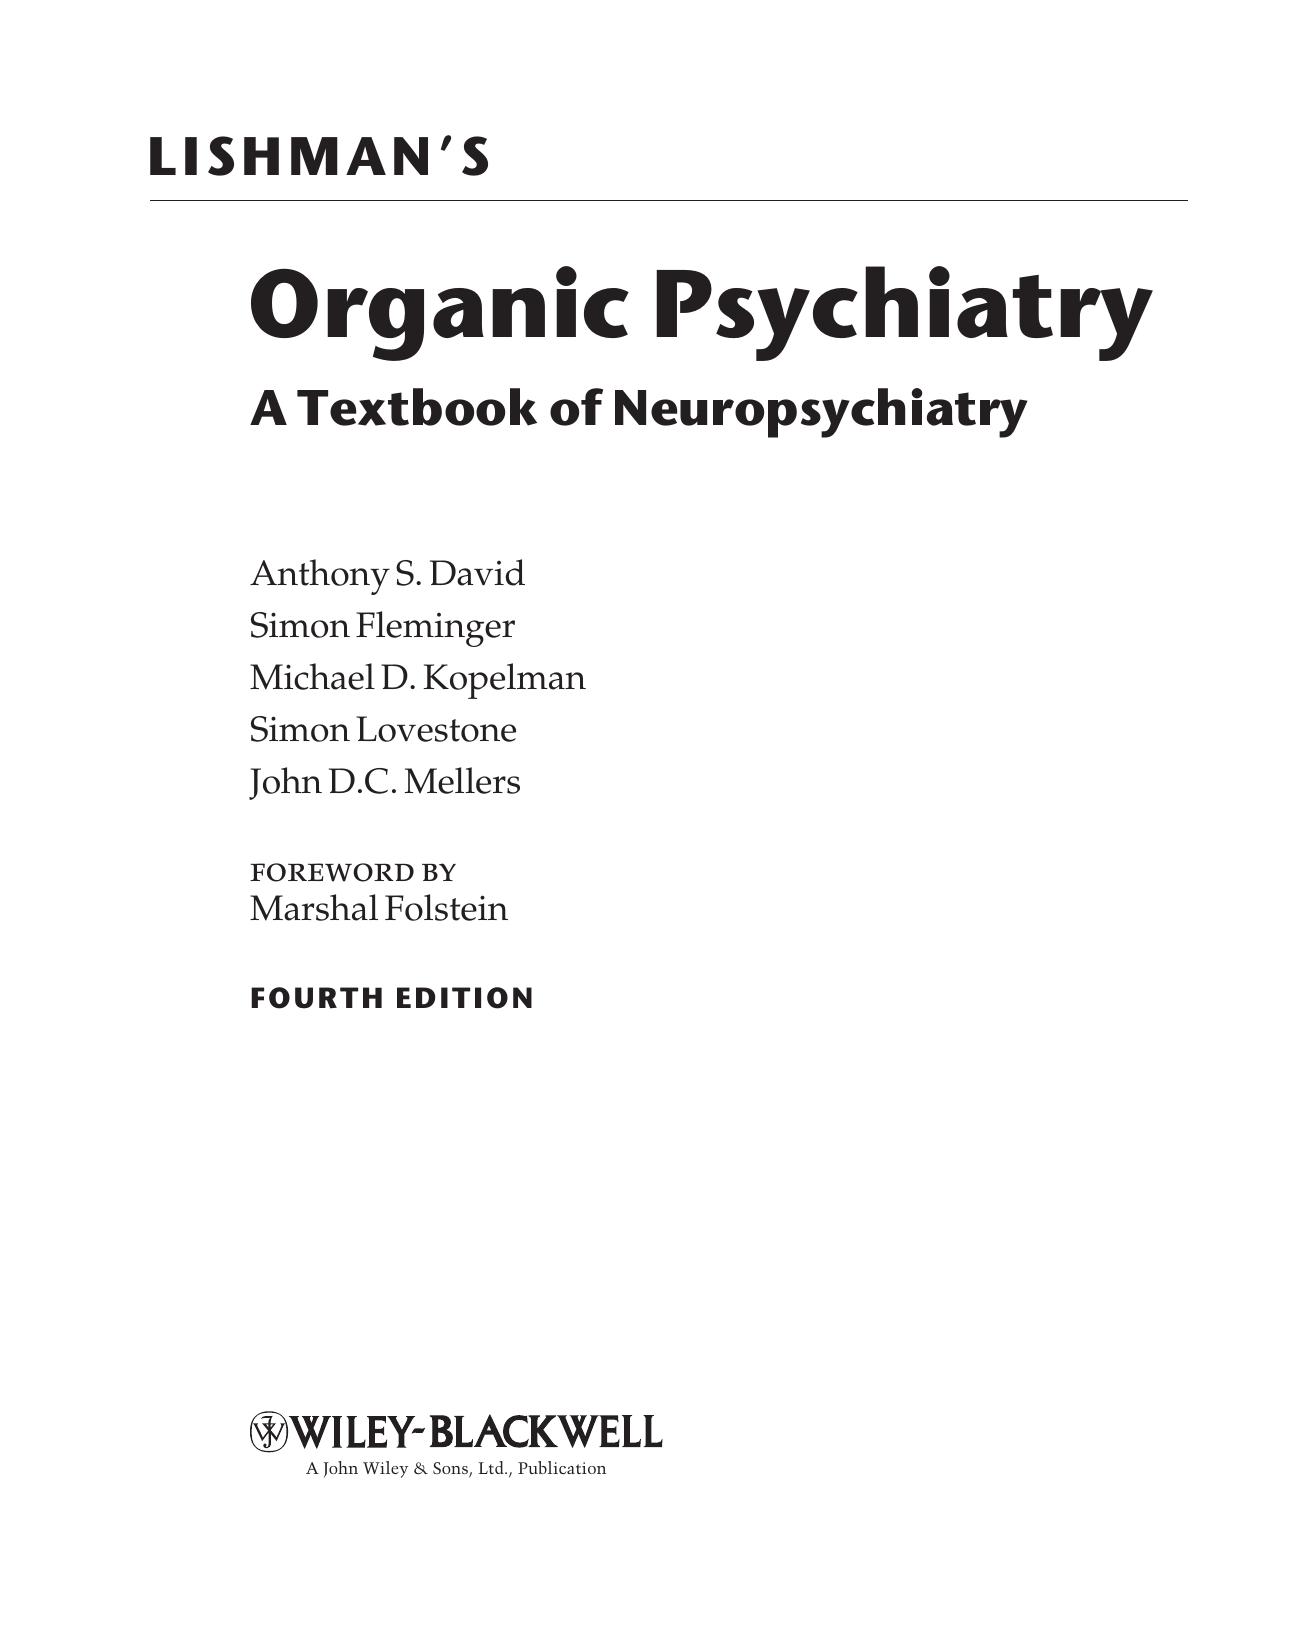 LISHMAN’S Organic Psychiatry: A Textbook of Neuropsychiatry, FOURTH EDITION